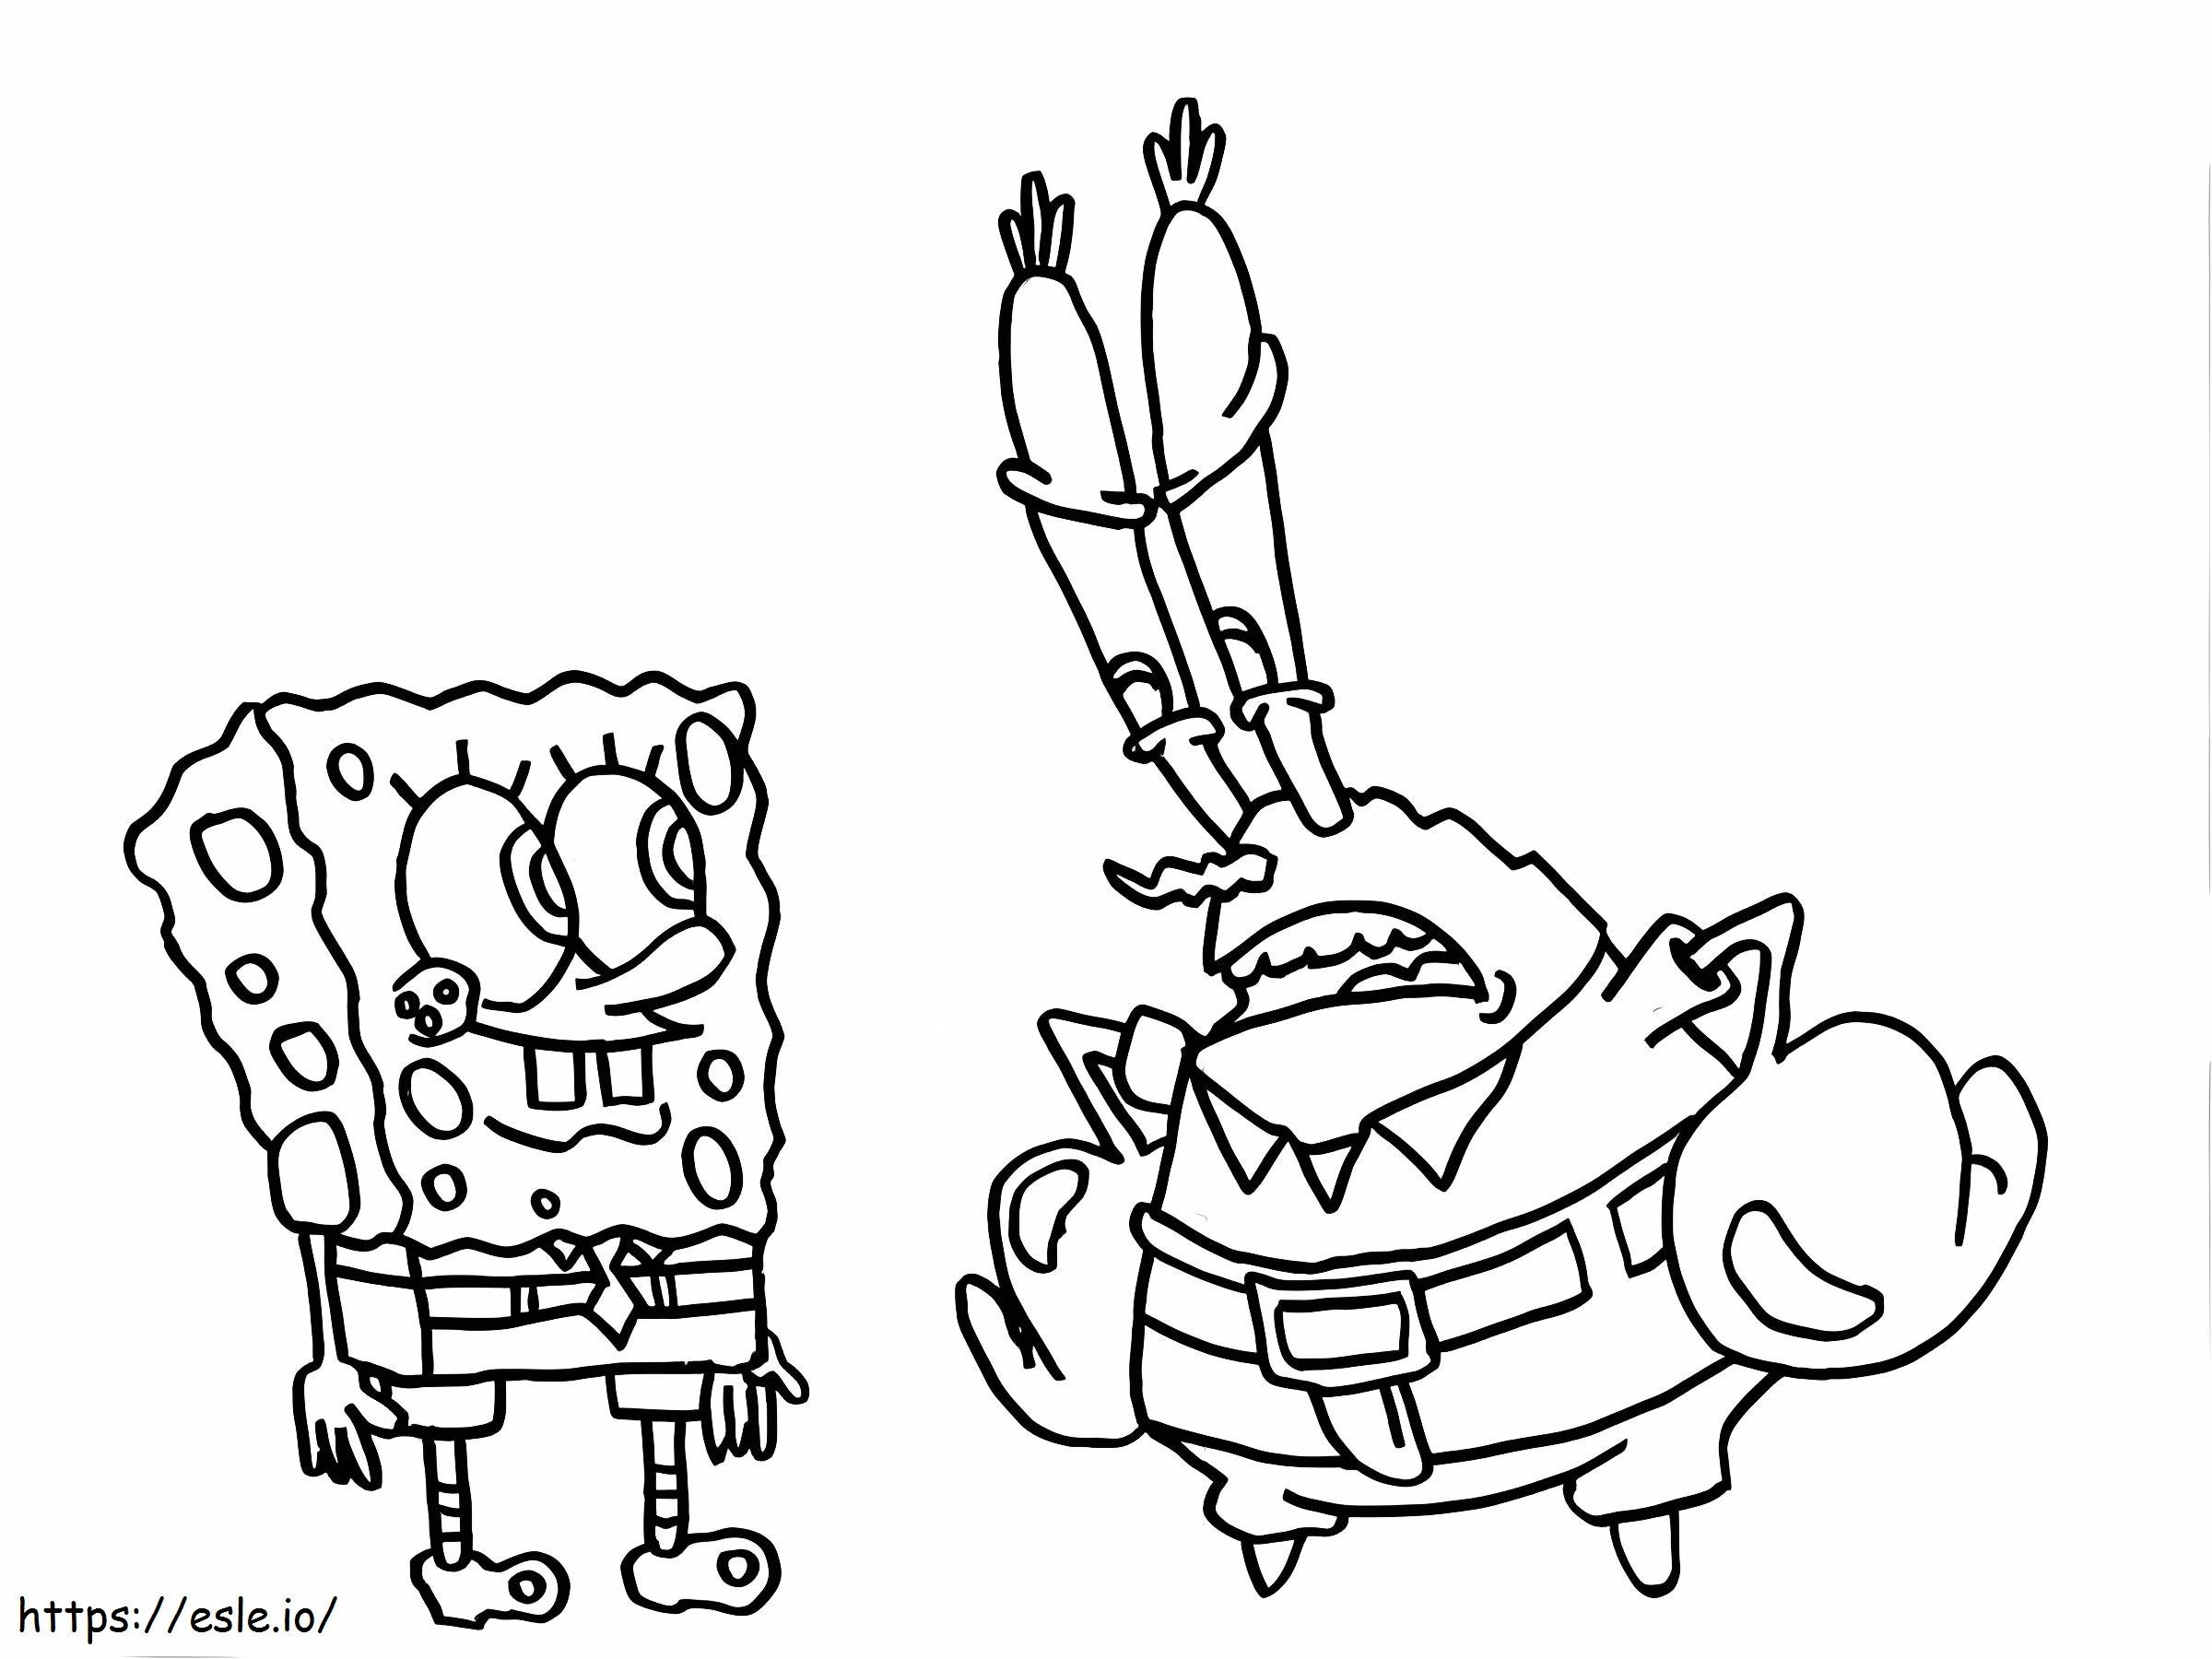 Mr. Krabs ist von SpongeBob enttäuscht ausmalbilder